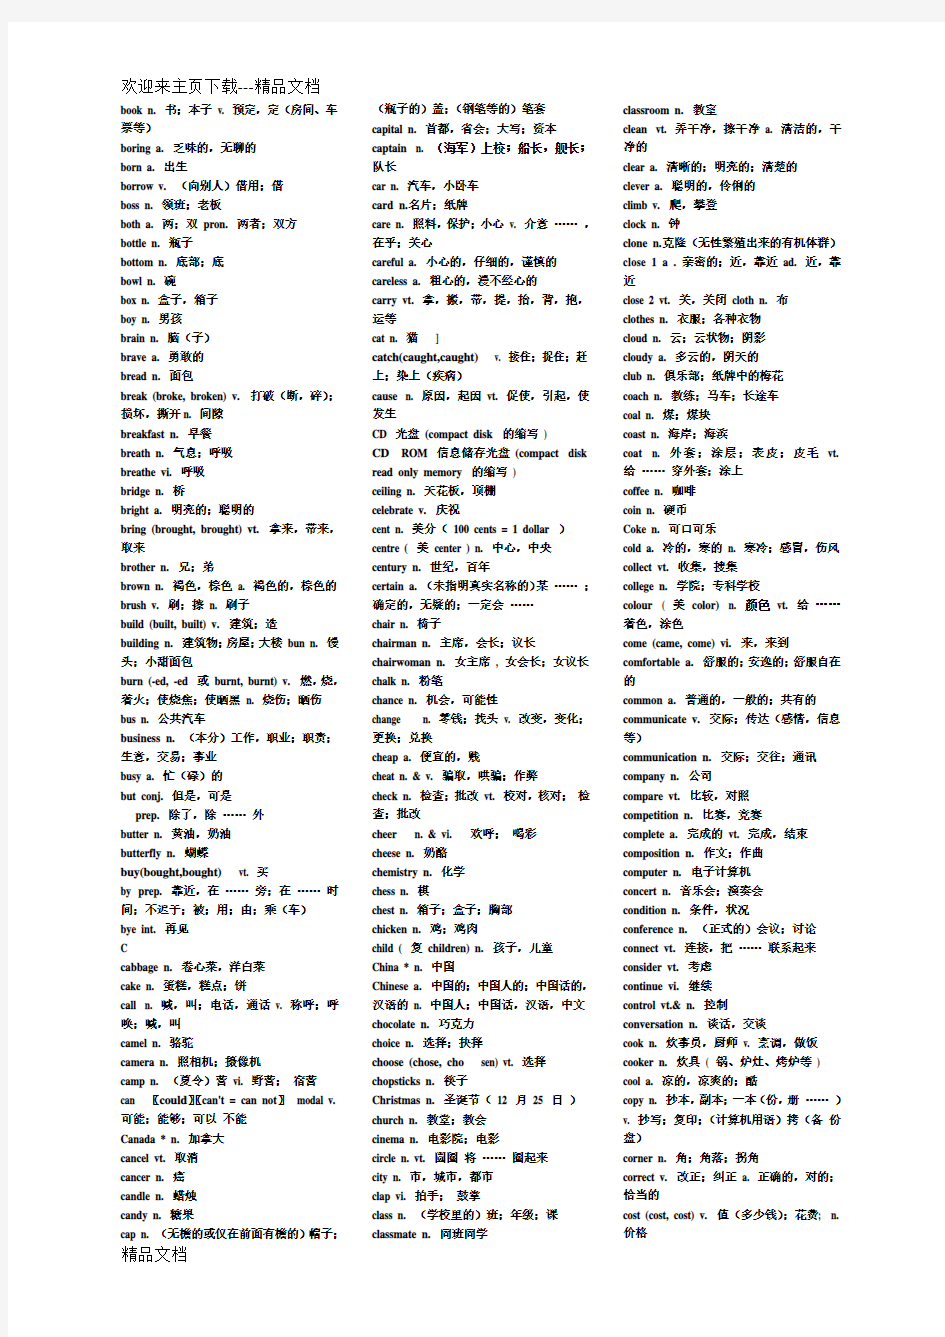 最新初中英语1600个词组、单词(带中文)